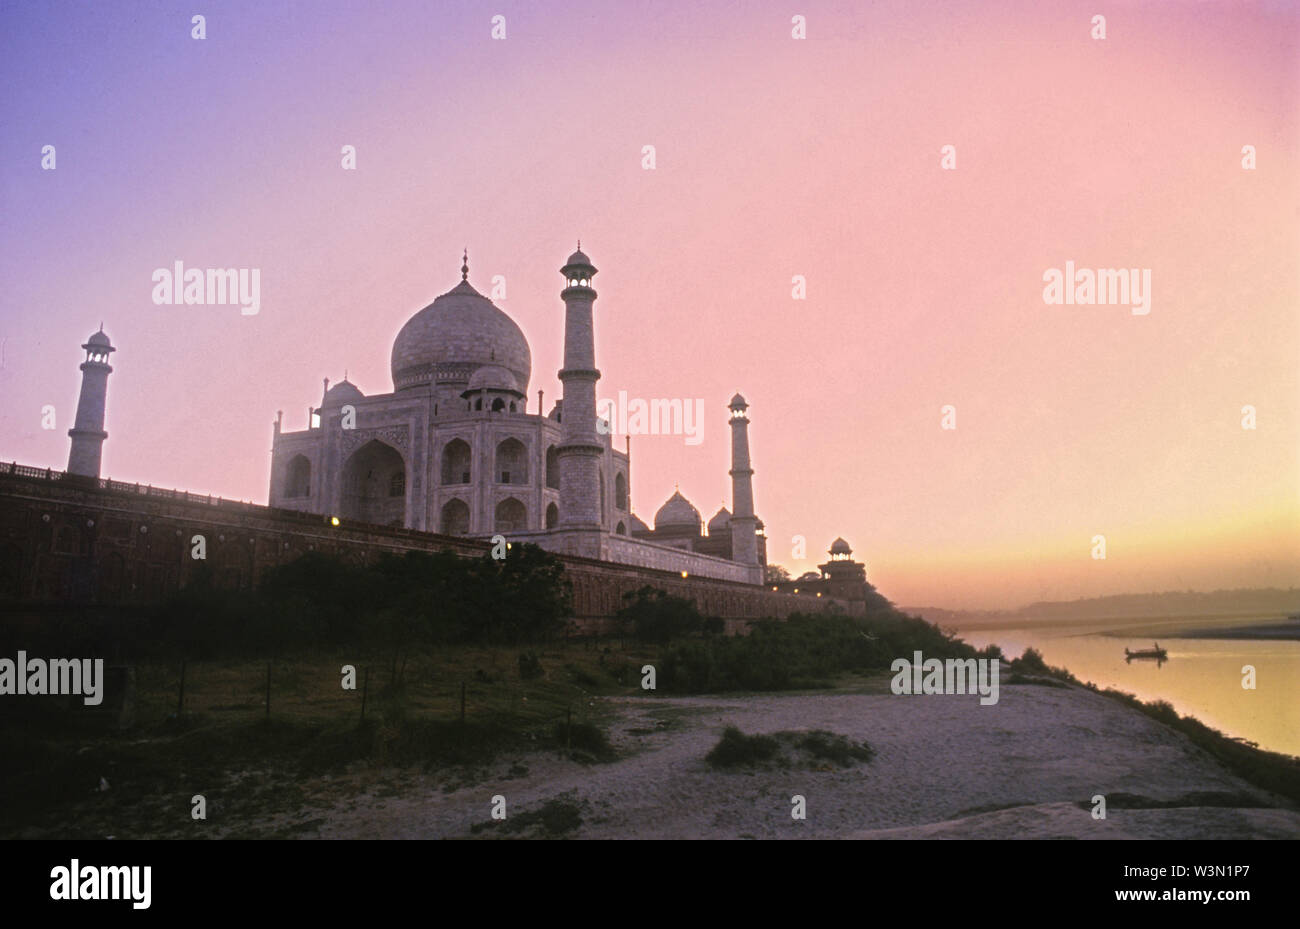 Le Taj Mahal est considéré comme le plus bel exemple de l'architecture de Mughal, un style qui combine des éléments du persan, turc, indien, et styles architecturaux islamiques. En 1983, le Taj Mahal est devenu Site du patrimoine mondial de l'UNESCO et a été cité comme "le joyau de l'art musulman en Inde et l'un des chefs-d'œuvre universellement admirés du patrimoine dans le monde... Banque D'Images